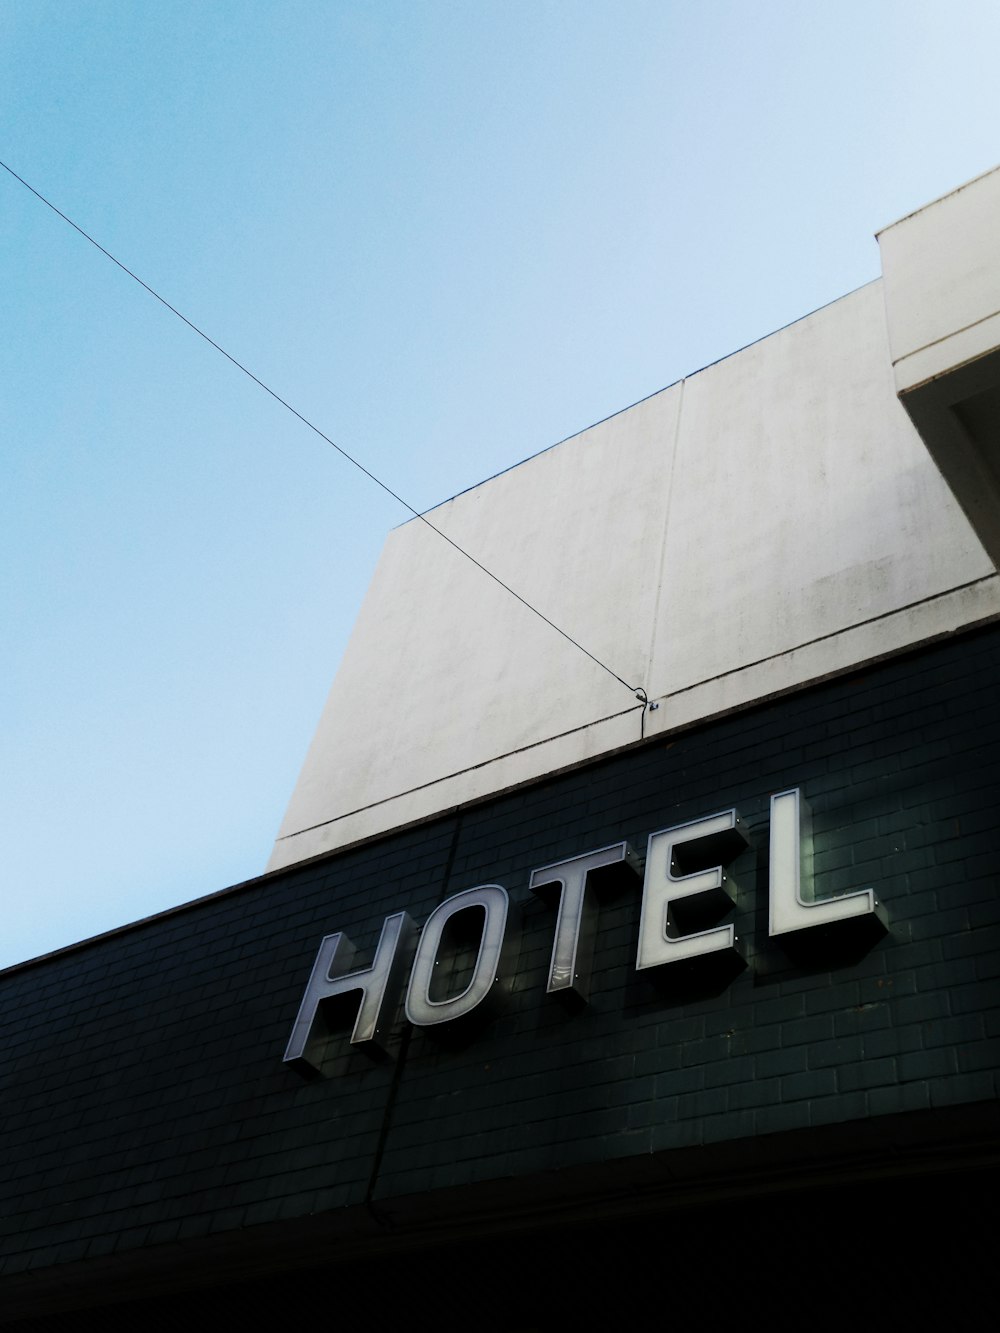 edificio de hotel de hormigón blanco y negro bajo un cielo azul tranquilo